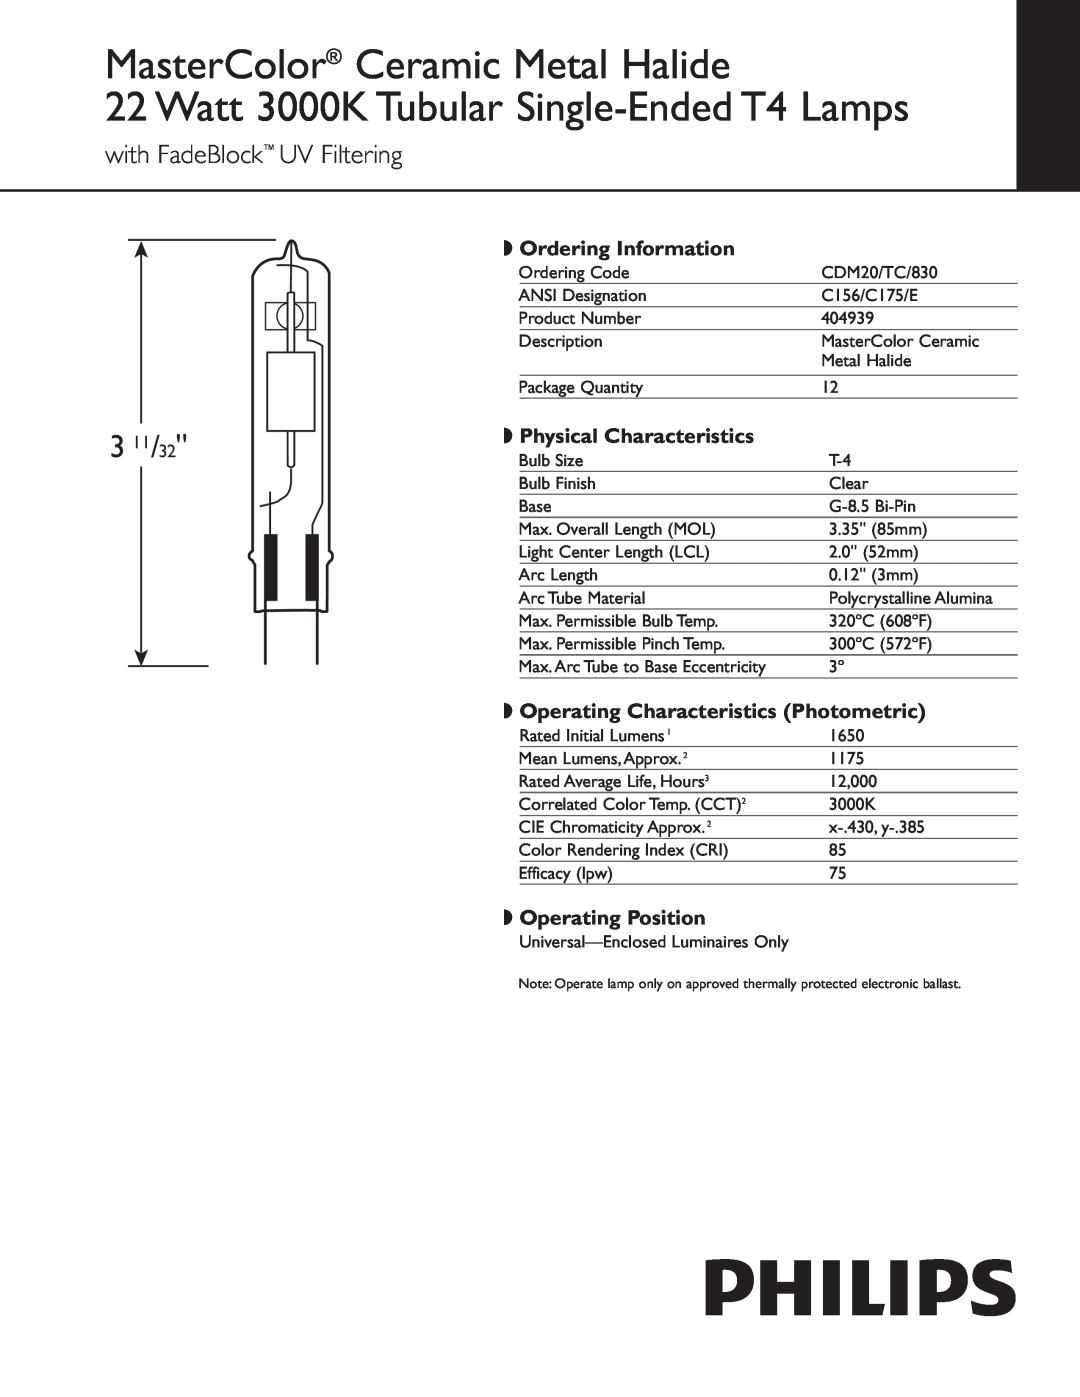 Philips 404939 manual MasterColor Ceramic Metal Halide, Watt 3000K Tubular Single-EndedT4 Lamps, 3 11/32 